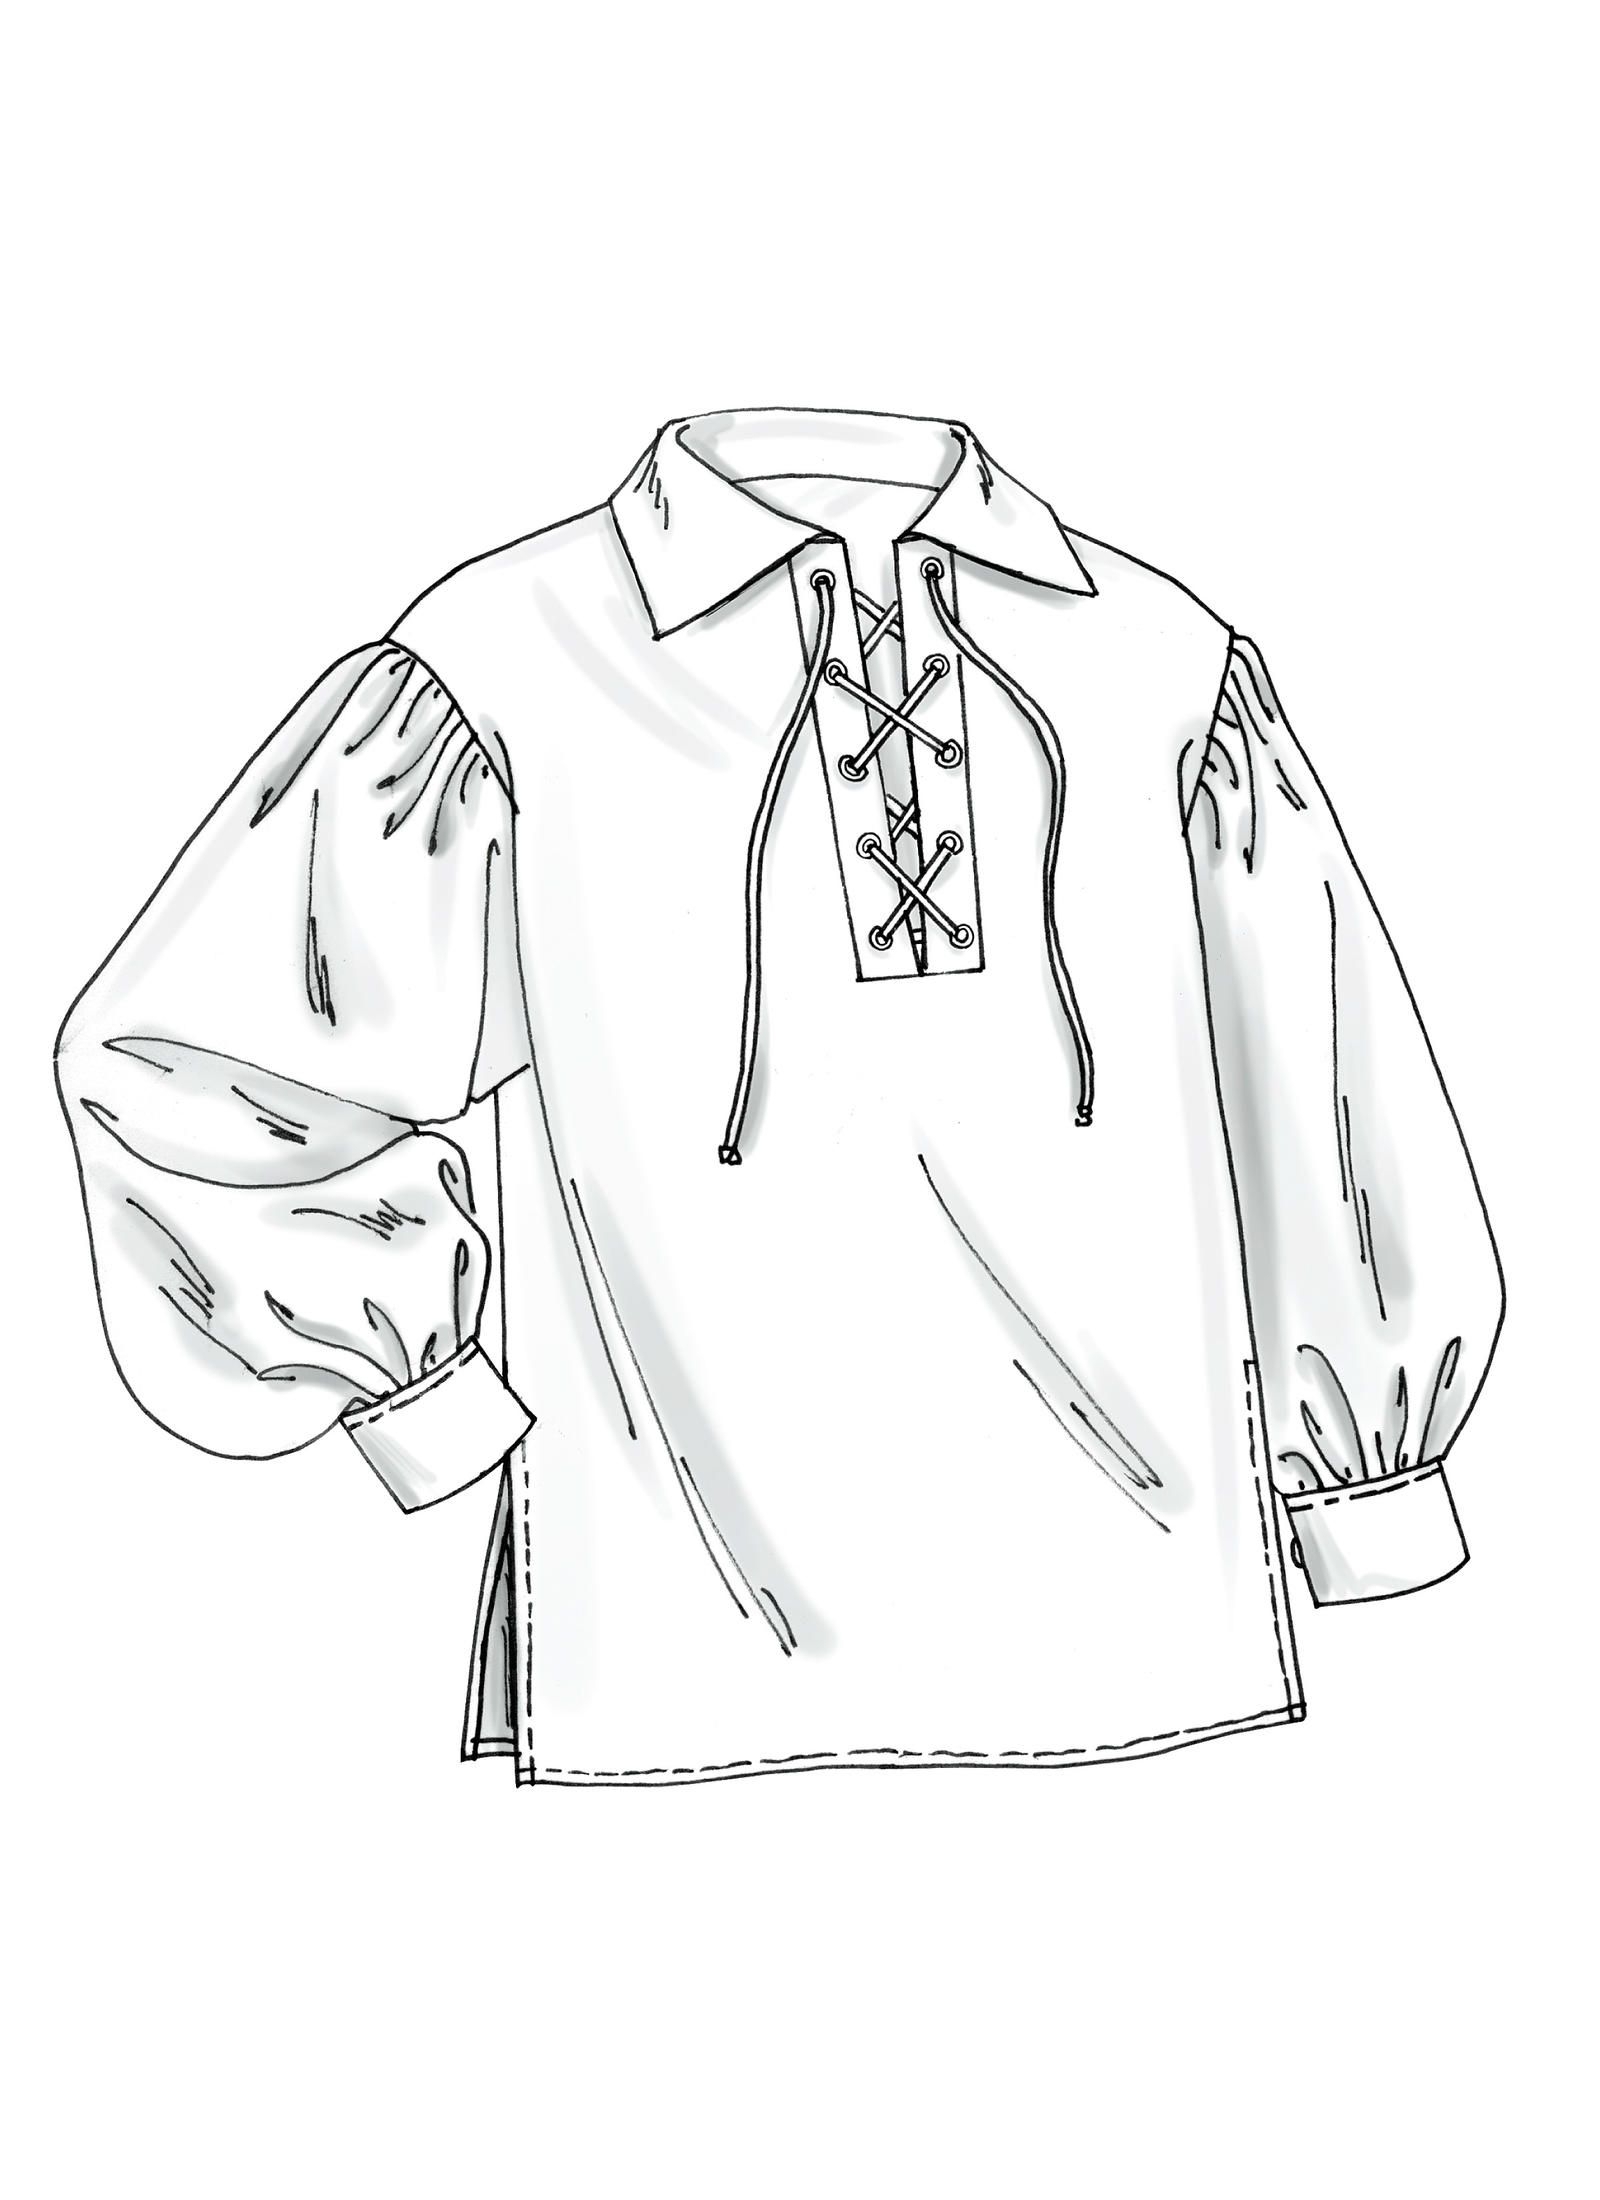 Референс рисунок мужская одежда 19 века рубашка с воротником спереди